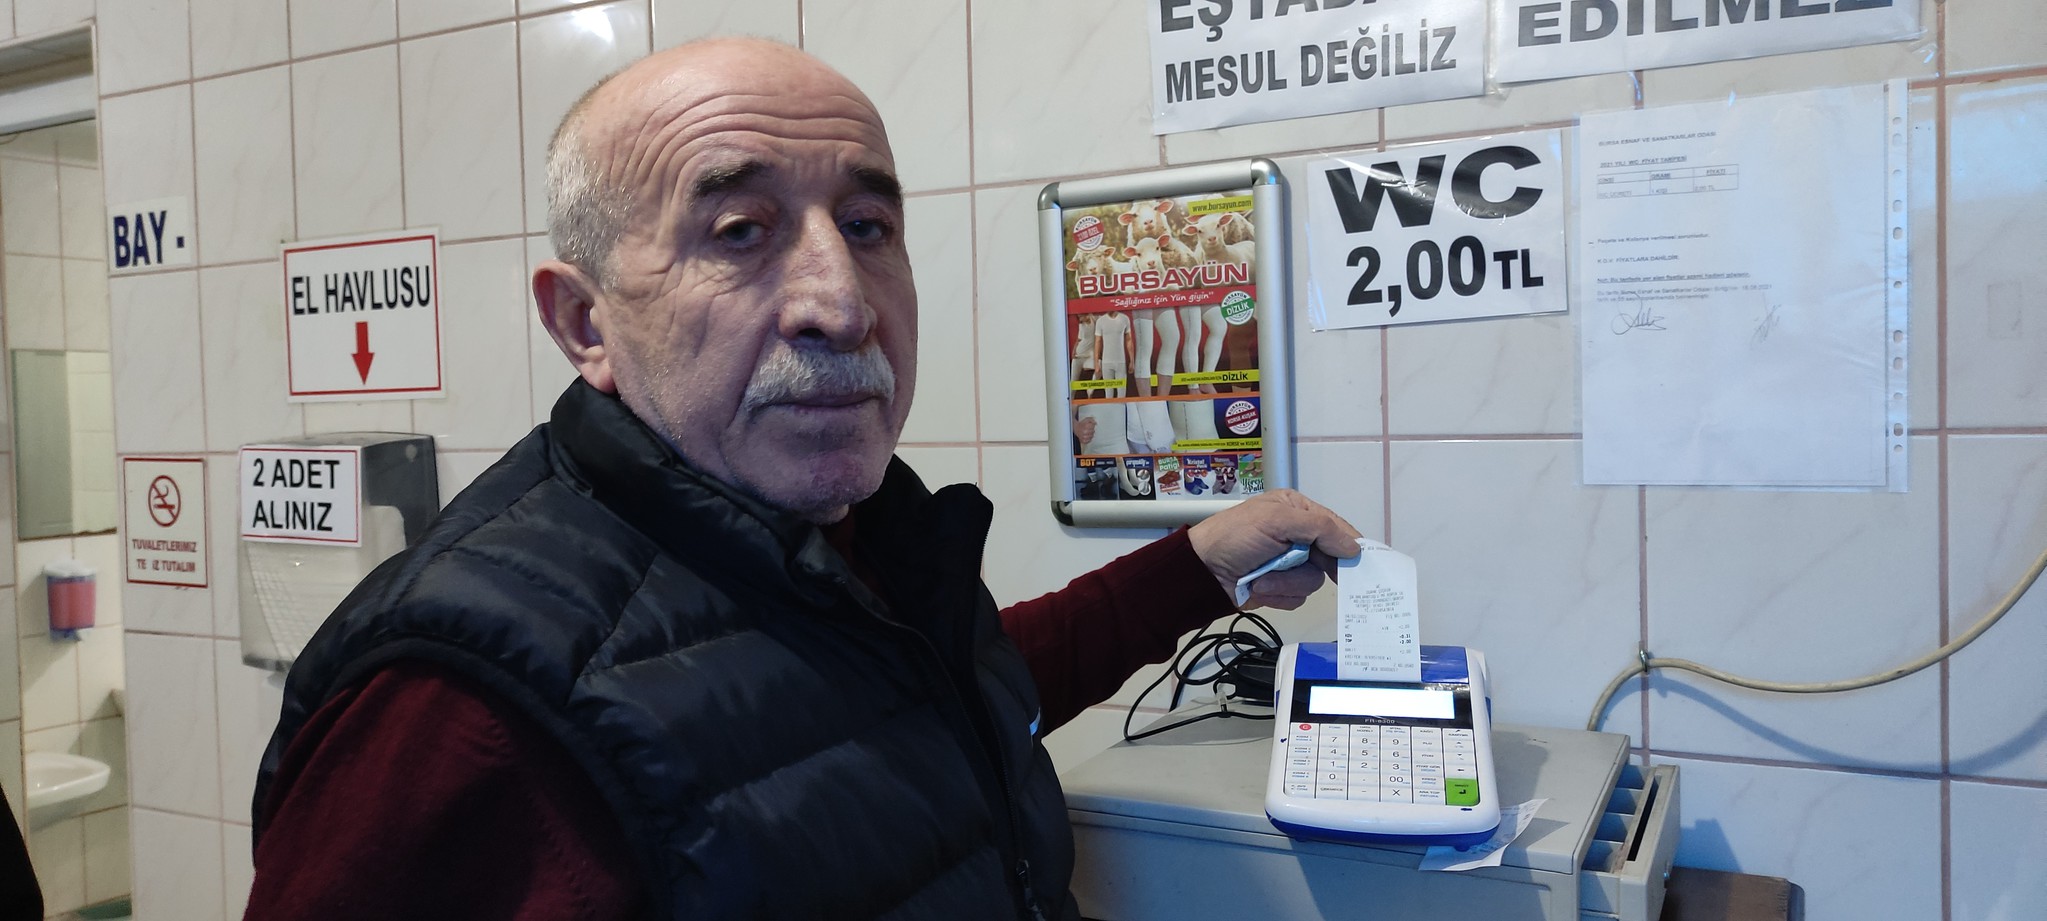 Bursa’da özel tuvaletin özel müşterileri! Servet kazanıyor